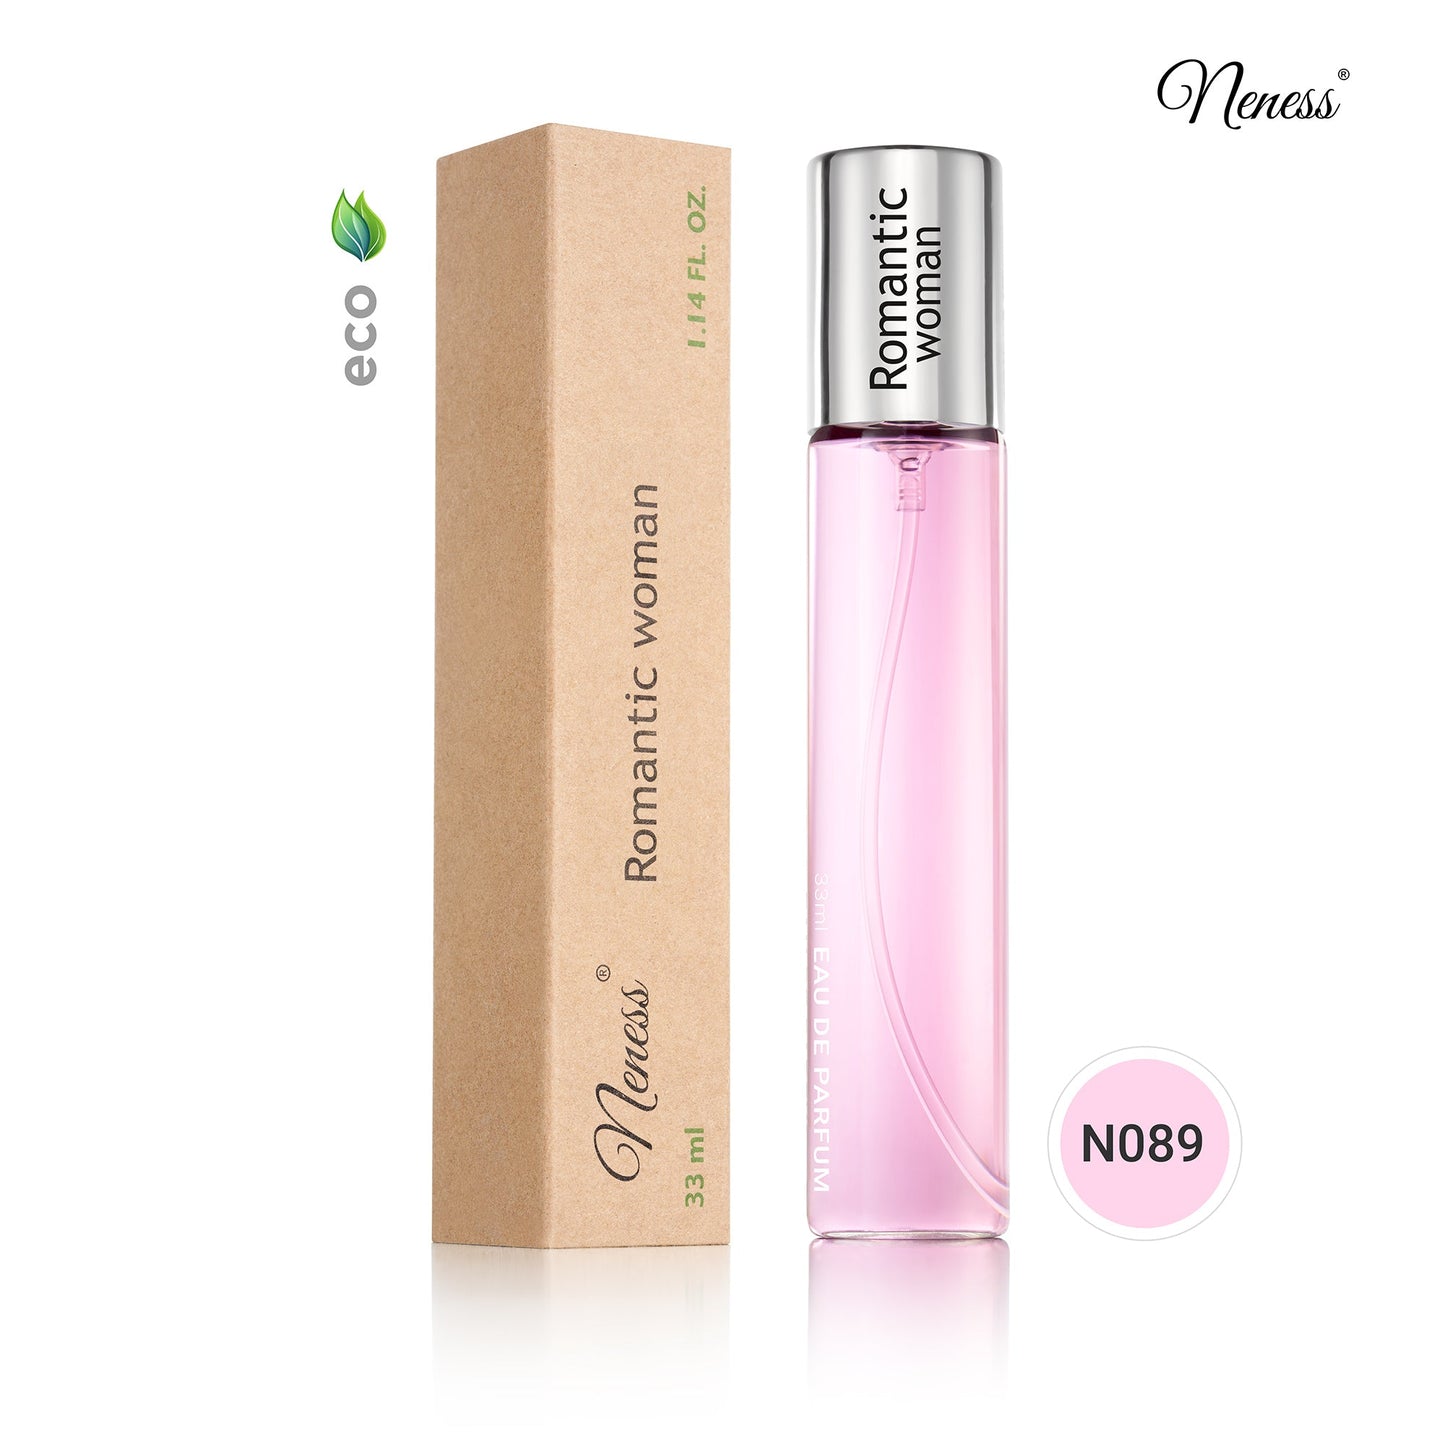 N089. Neness Romantic Woman - 33 ml - Parfum Pour Femme